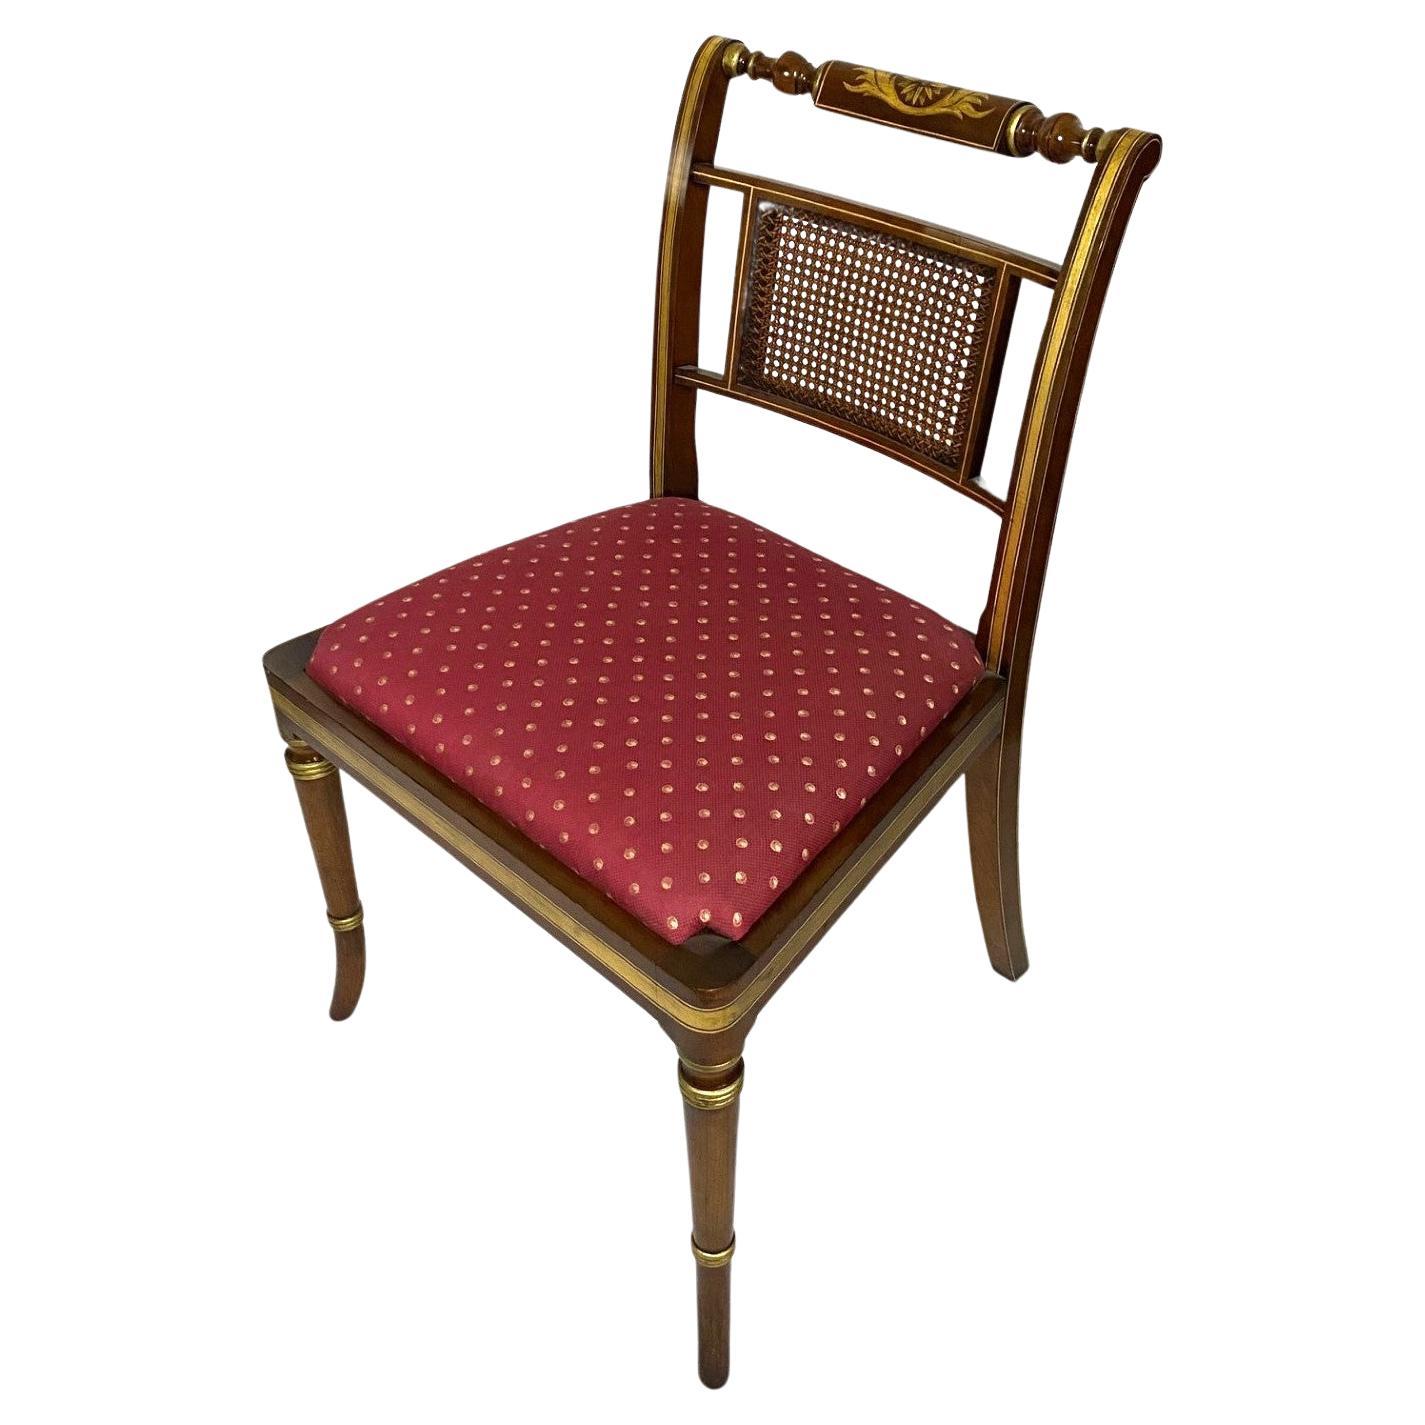 NEU, englischer Beistellstuhl aus Rosenholz im Regency-Stil mit handbemalter Dekoration